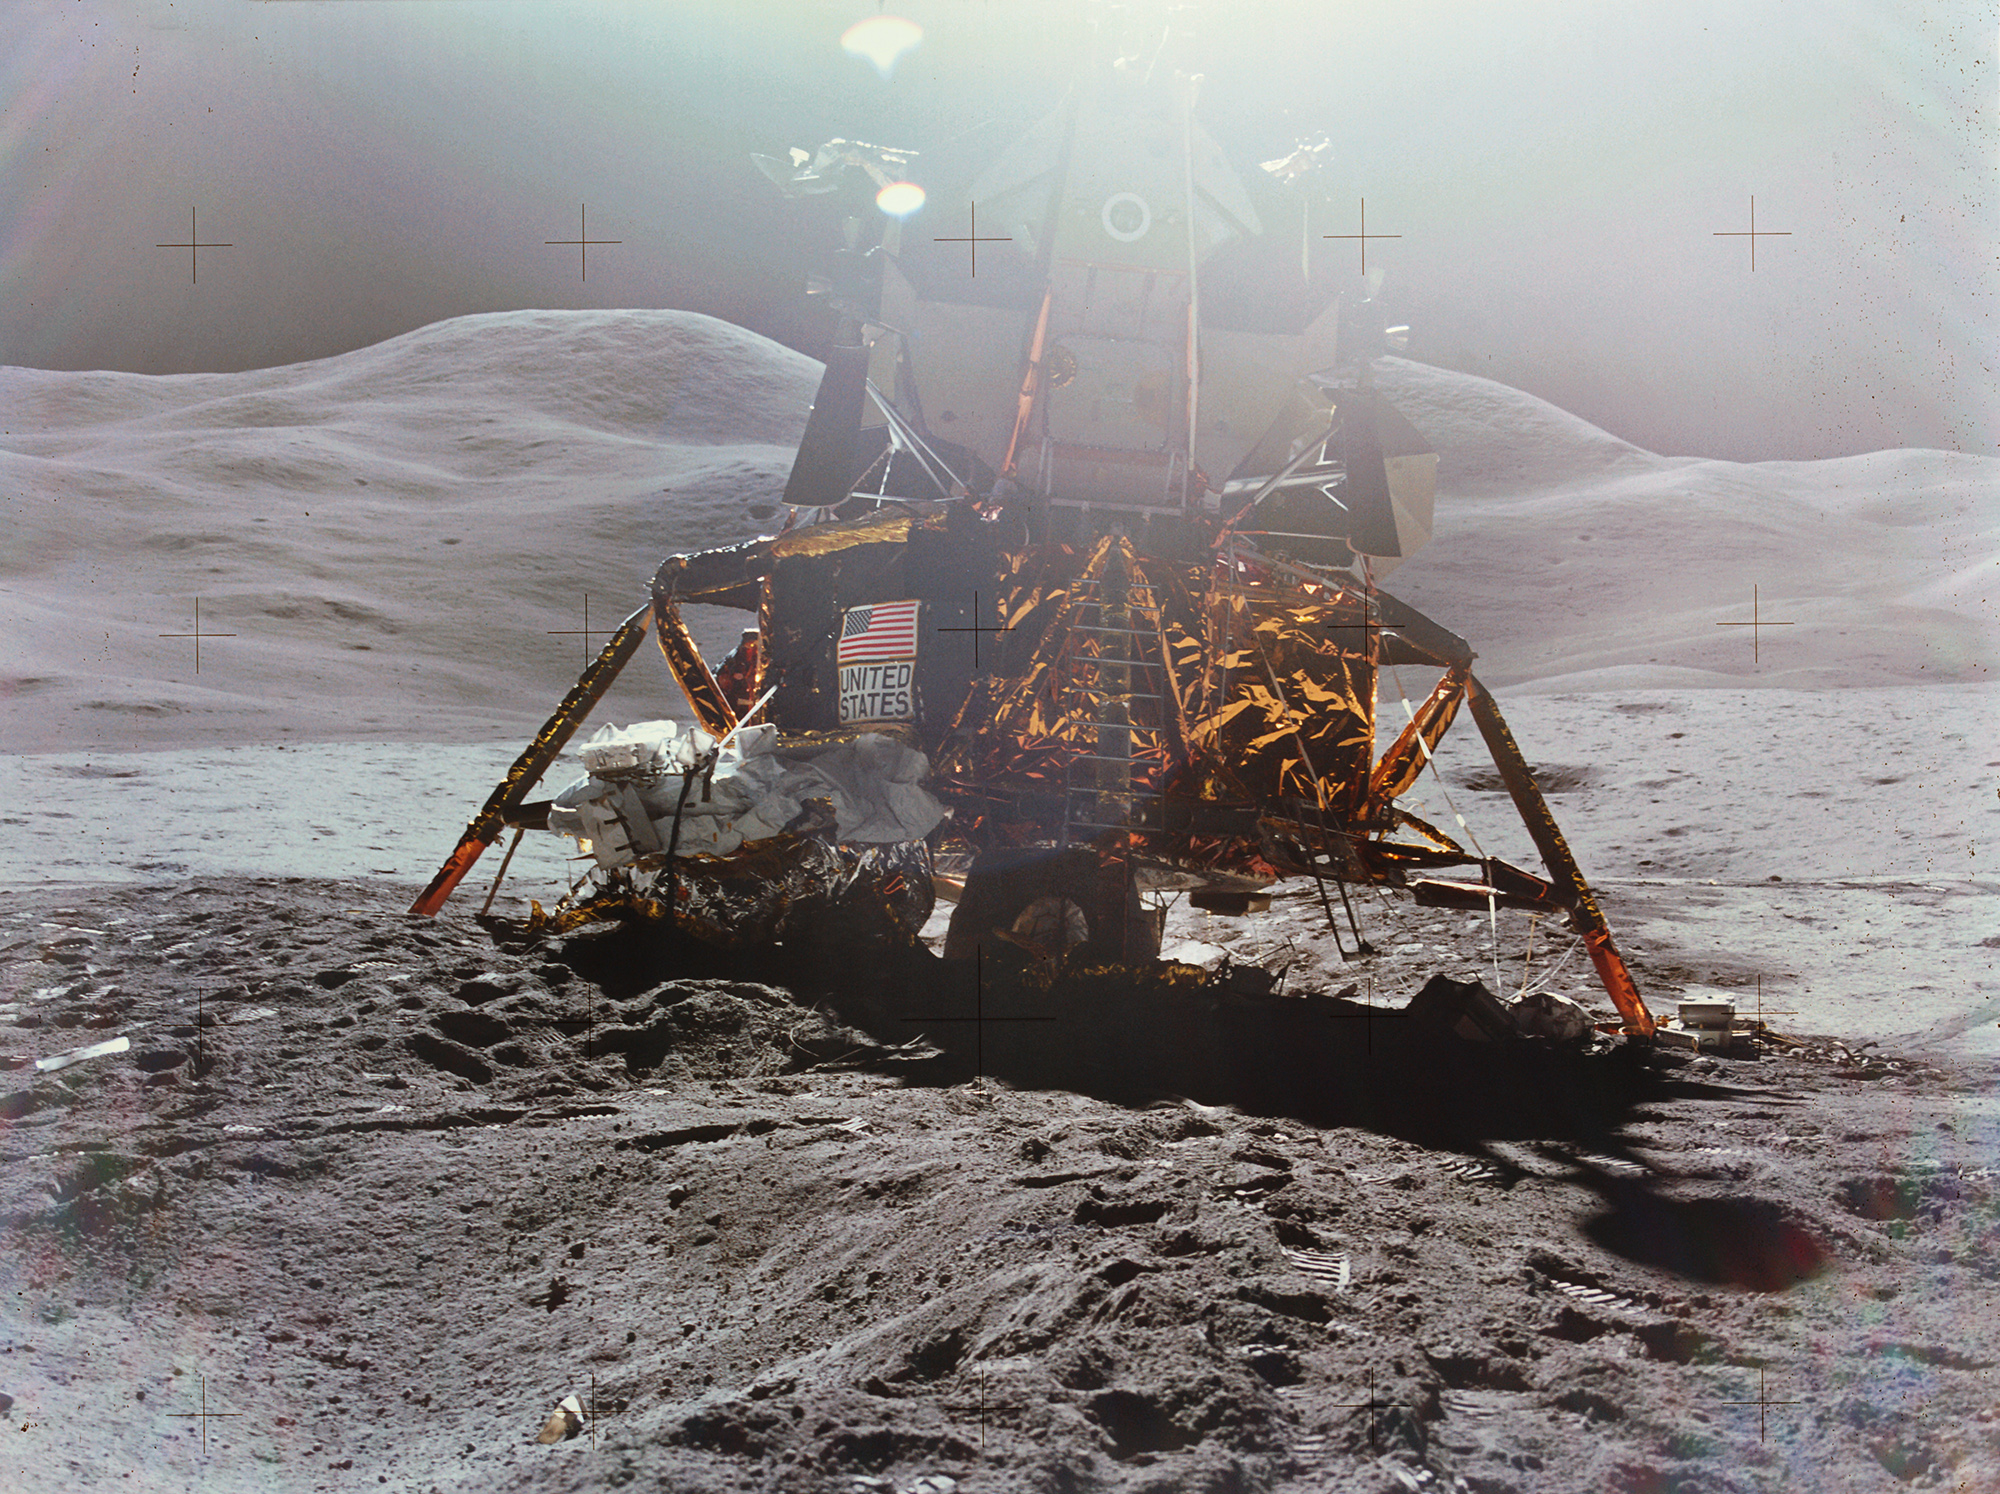 apollo-15-lunar-module-falcon.jpg